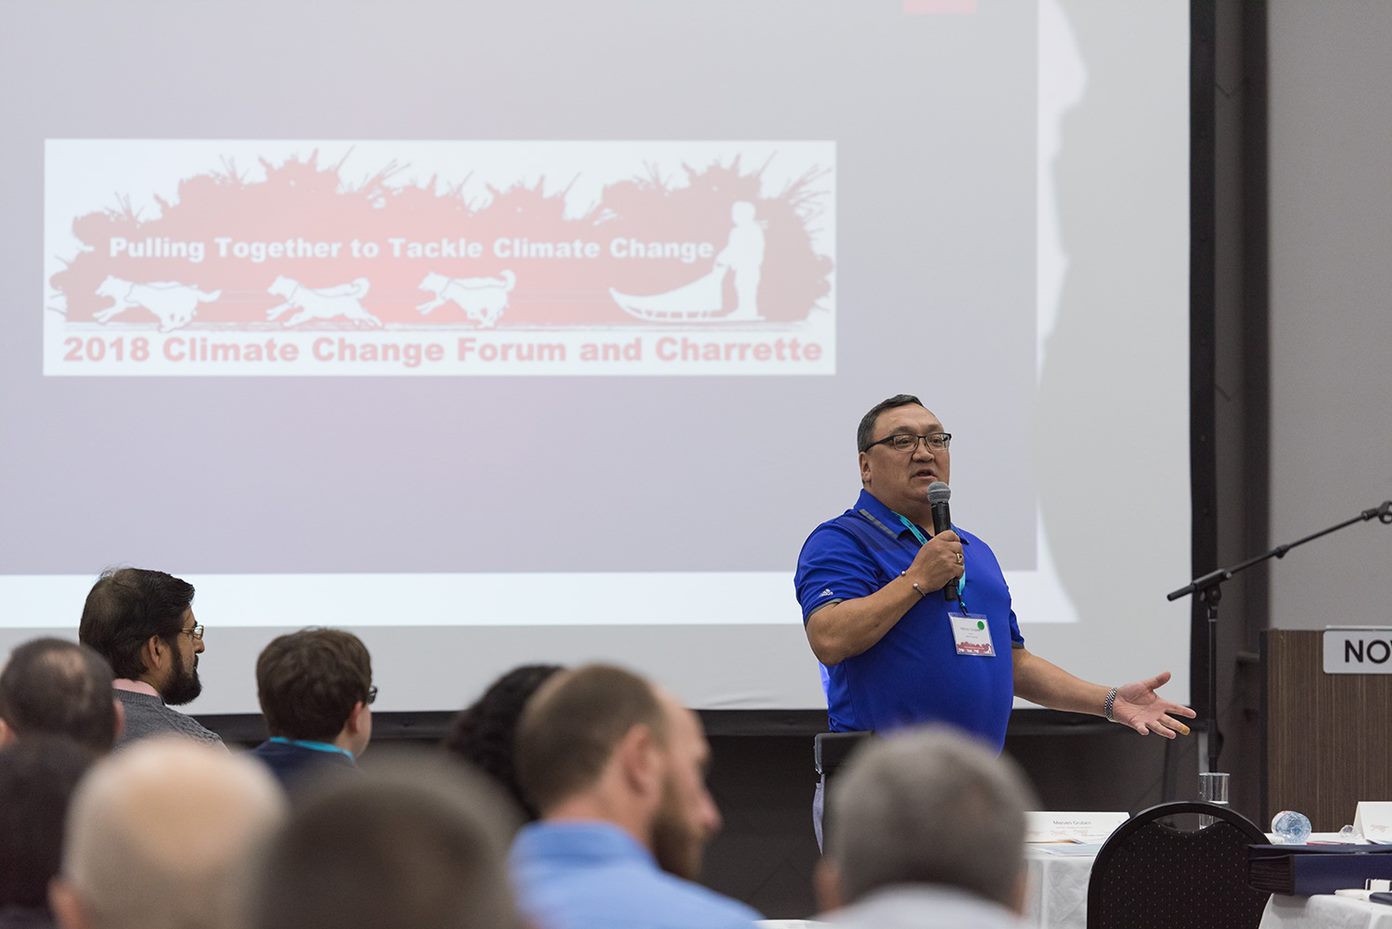 Un homme debout en chemise bleue tient un microphone pendant qu'il présente aux participants assis au forum, projeté derrière lui un écran disant «Forum et Charrette sur le changement climatique 2018»